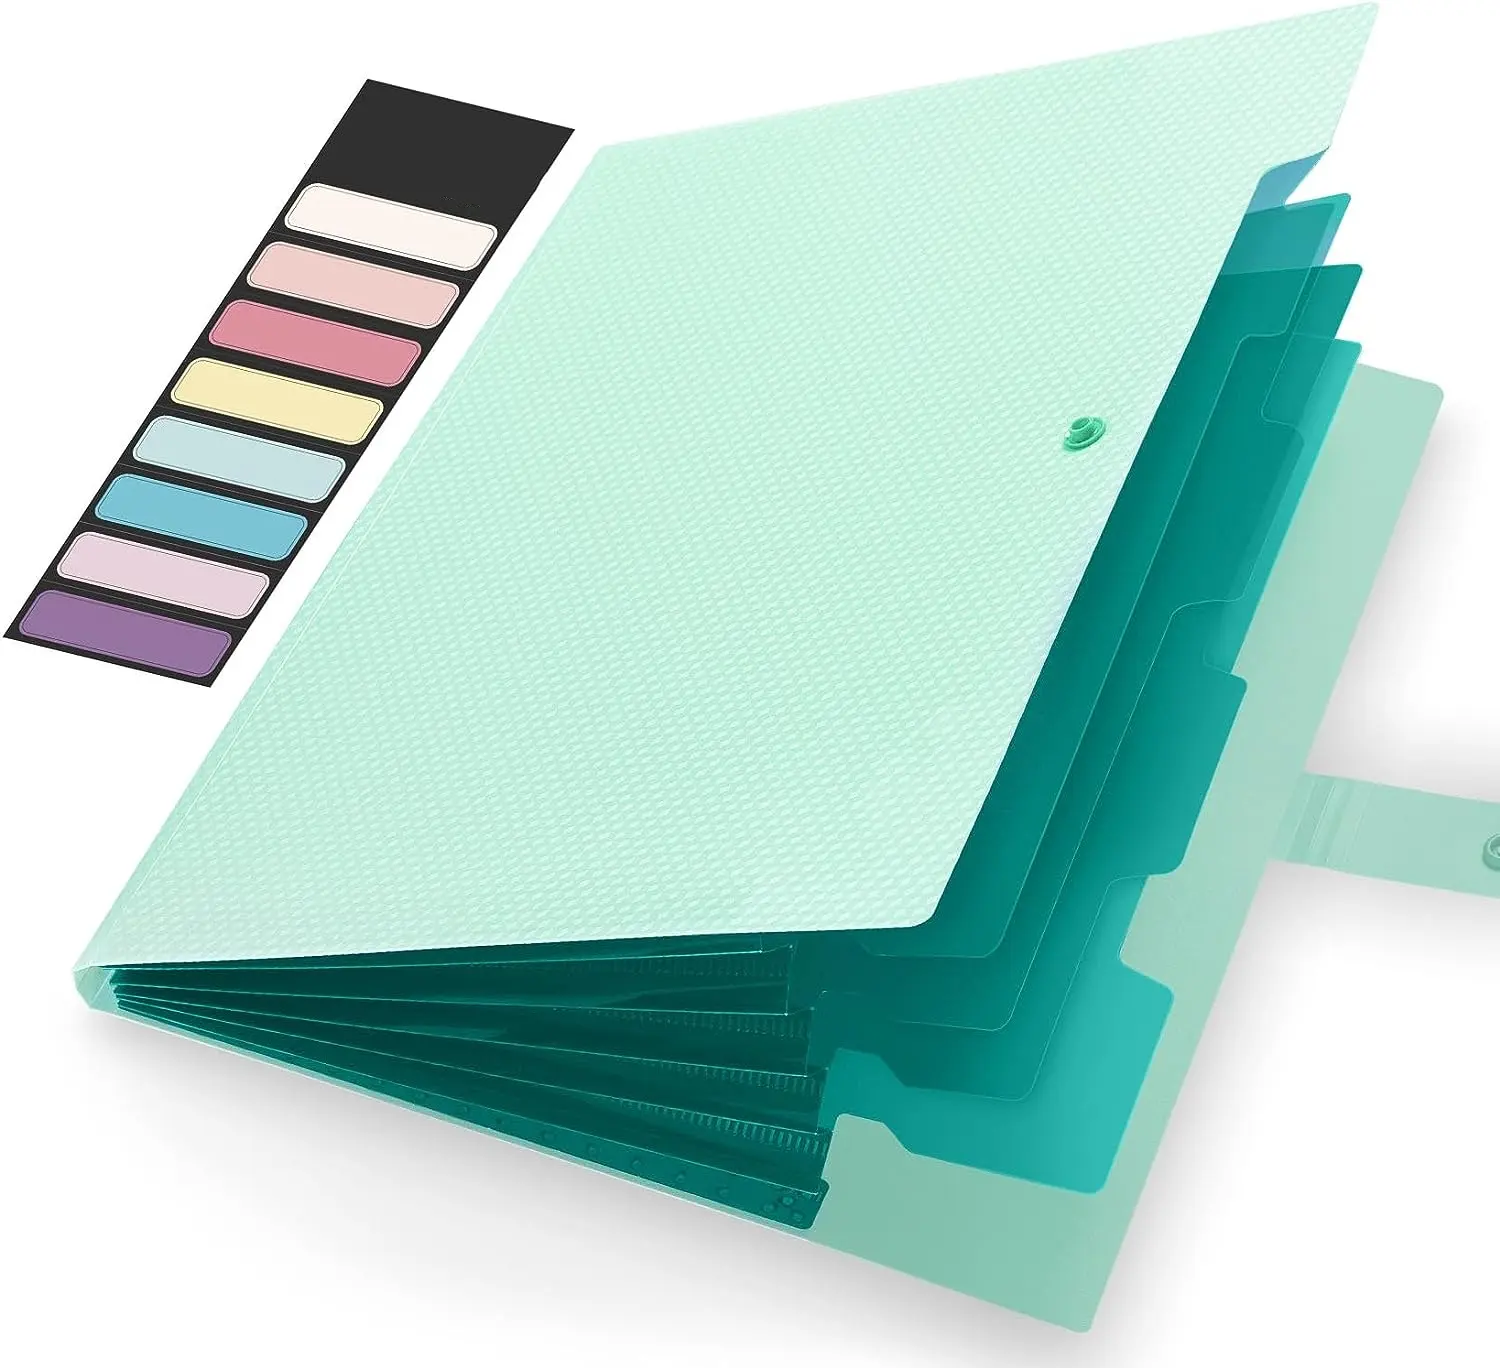 Carpeta de bolsillo A4 con bolsillos personalizados, organizador de archivos acordeón, carpeta ignífuga de expansión múltiple, bolsillo para archivos